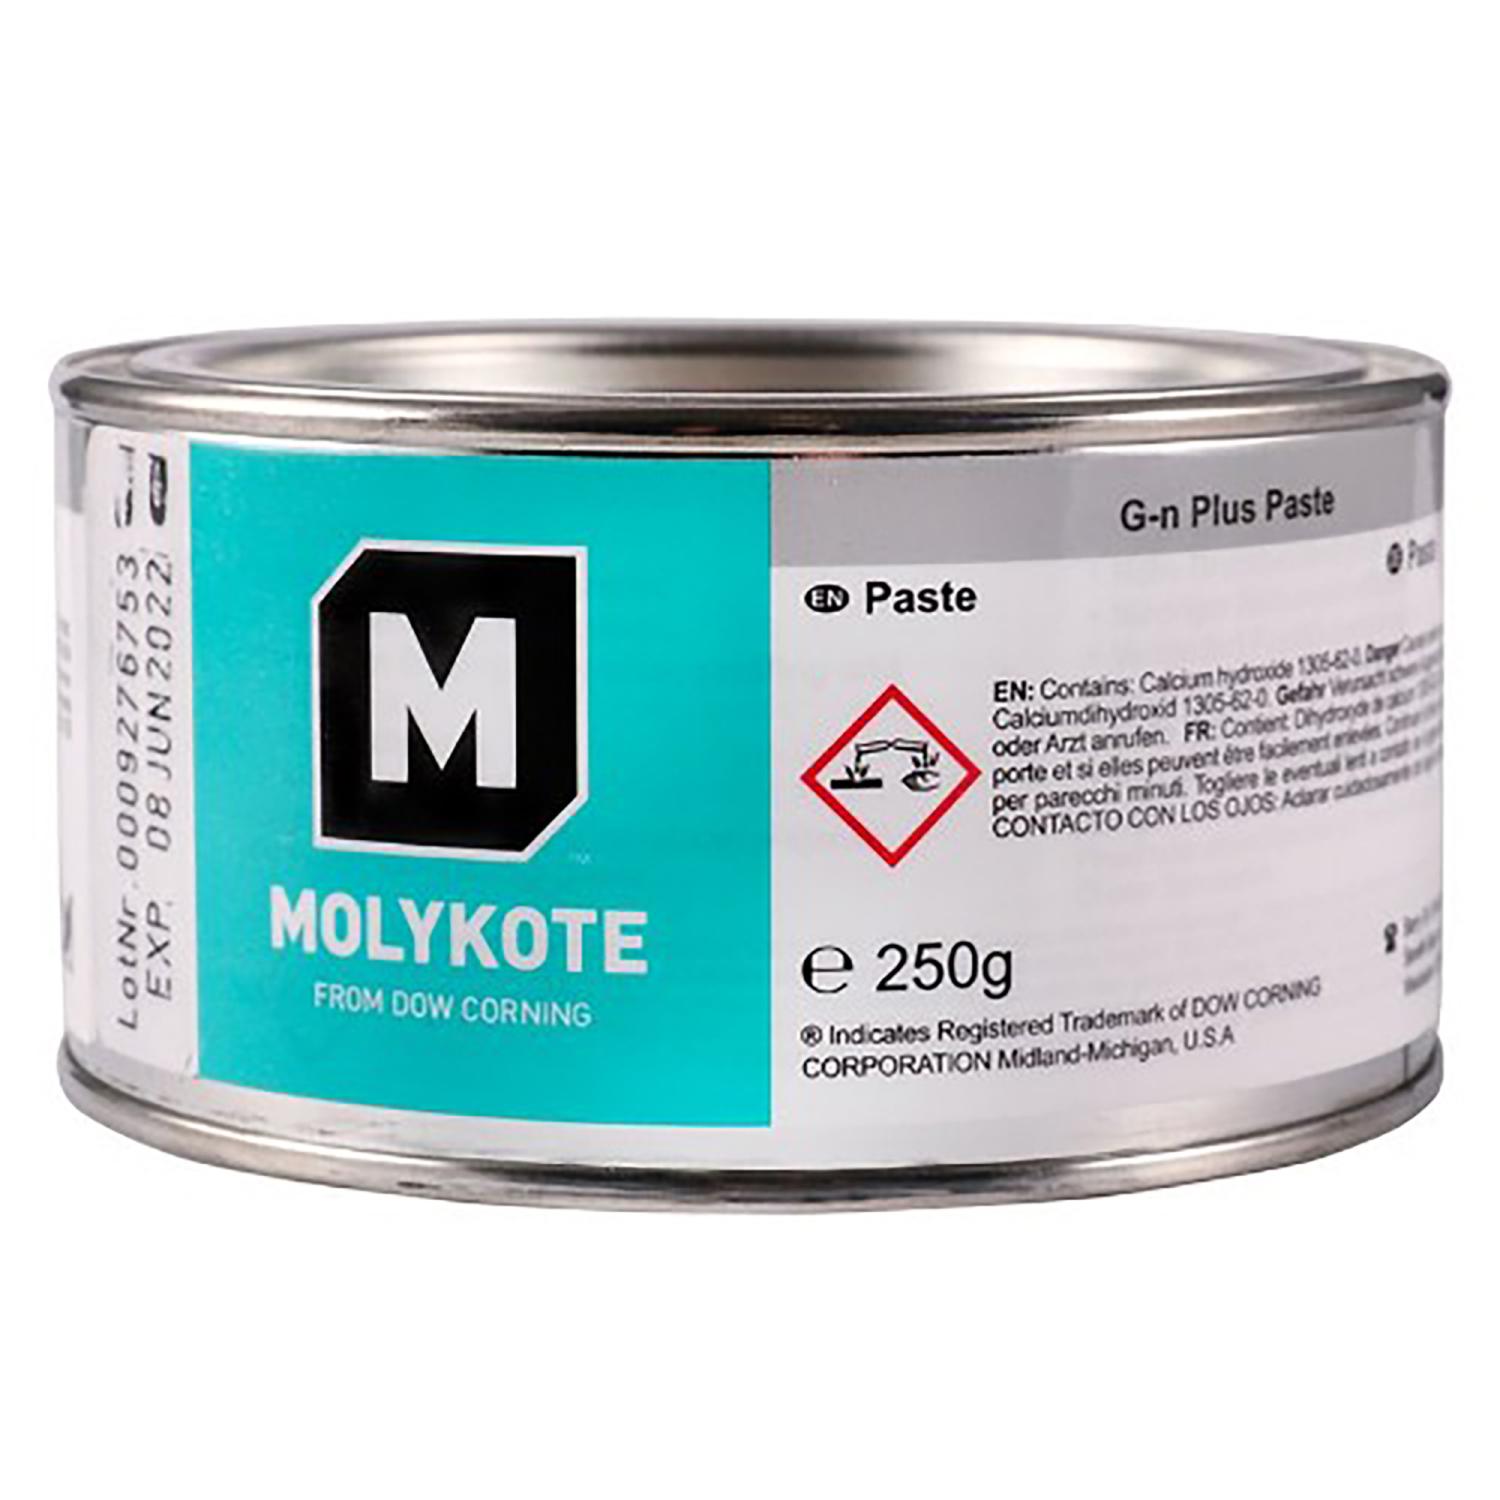 Molykote G-n Plus Paste 250g